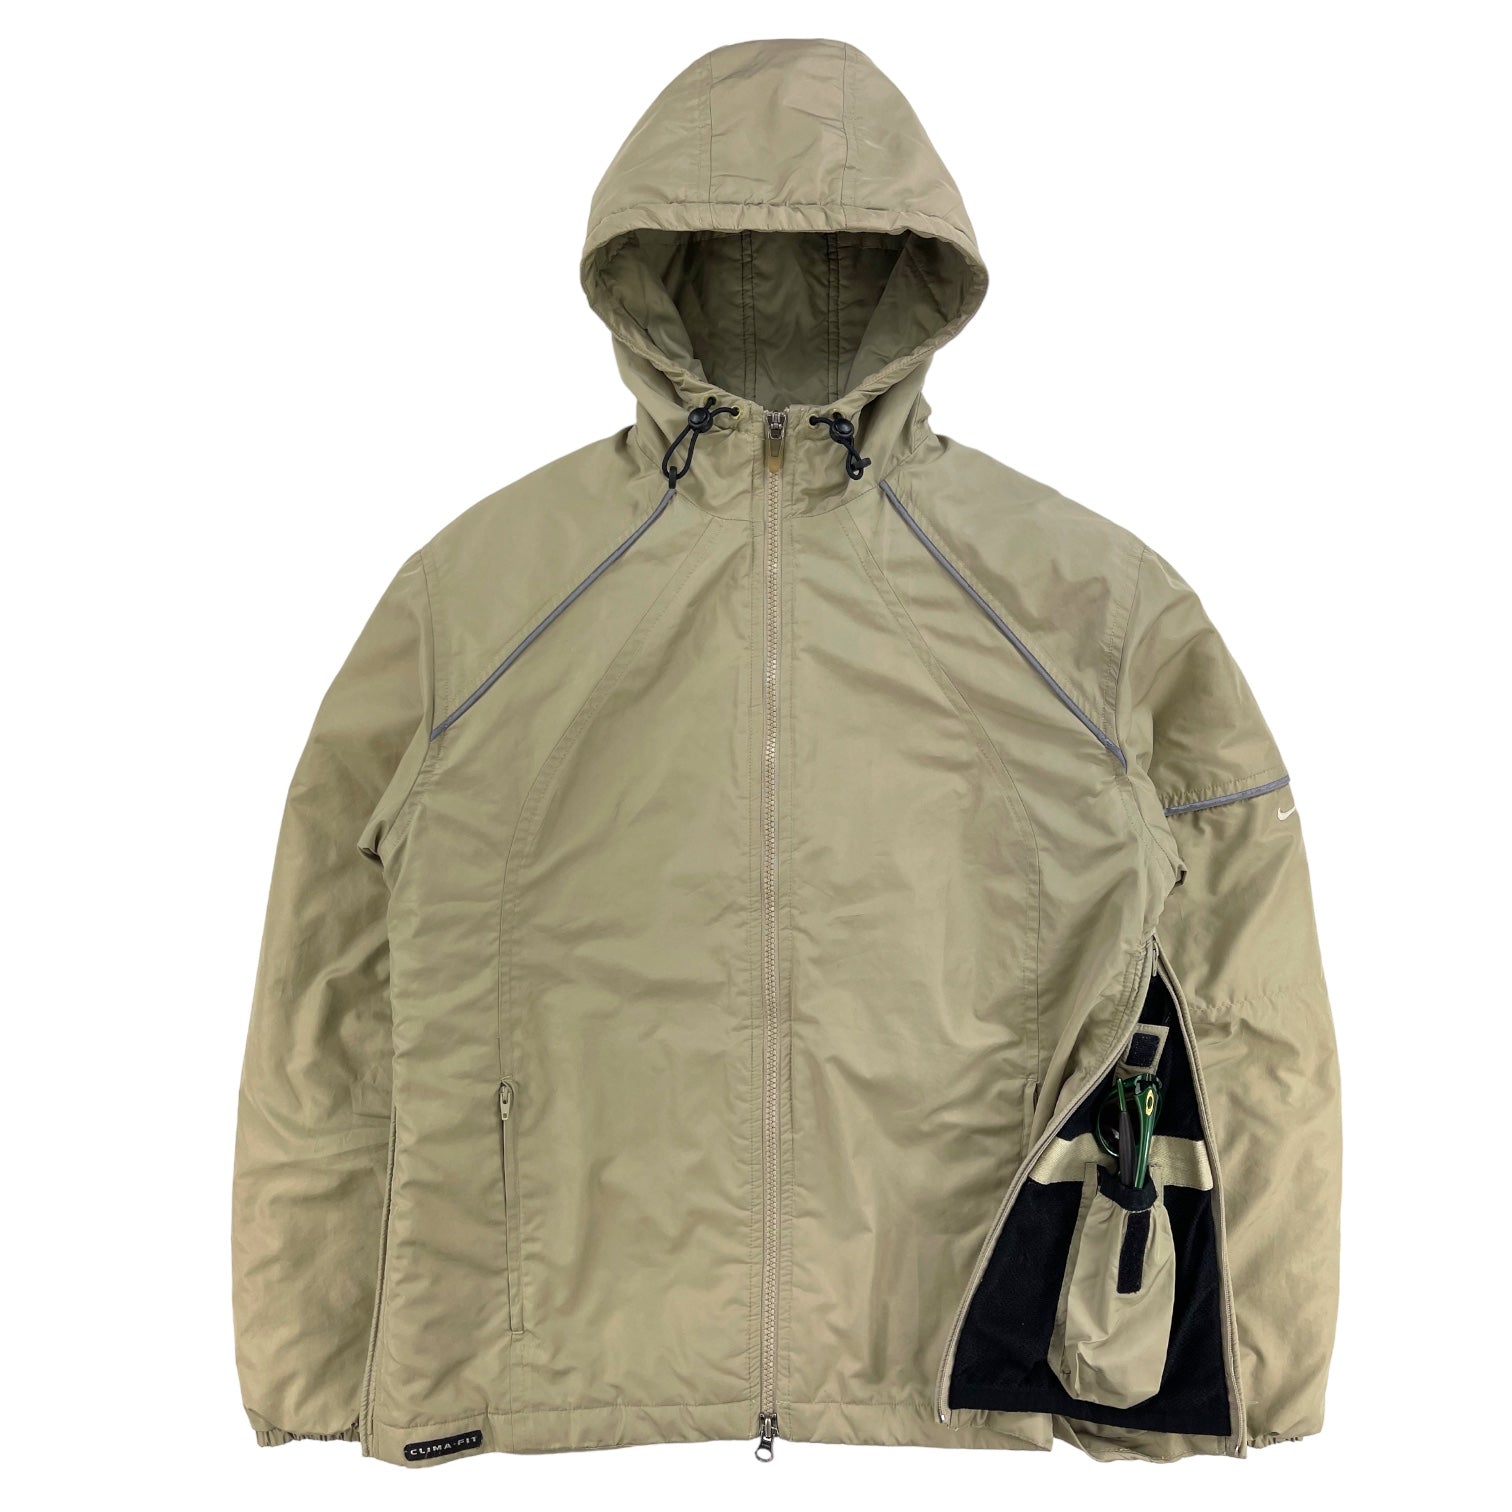 2000s Nike Clima-fit Concealed gusset pocket jacket